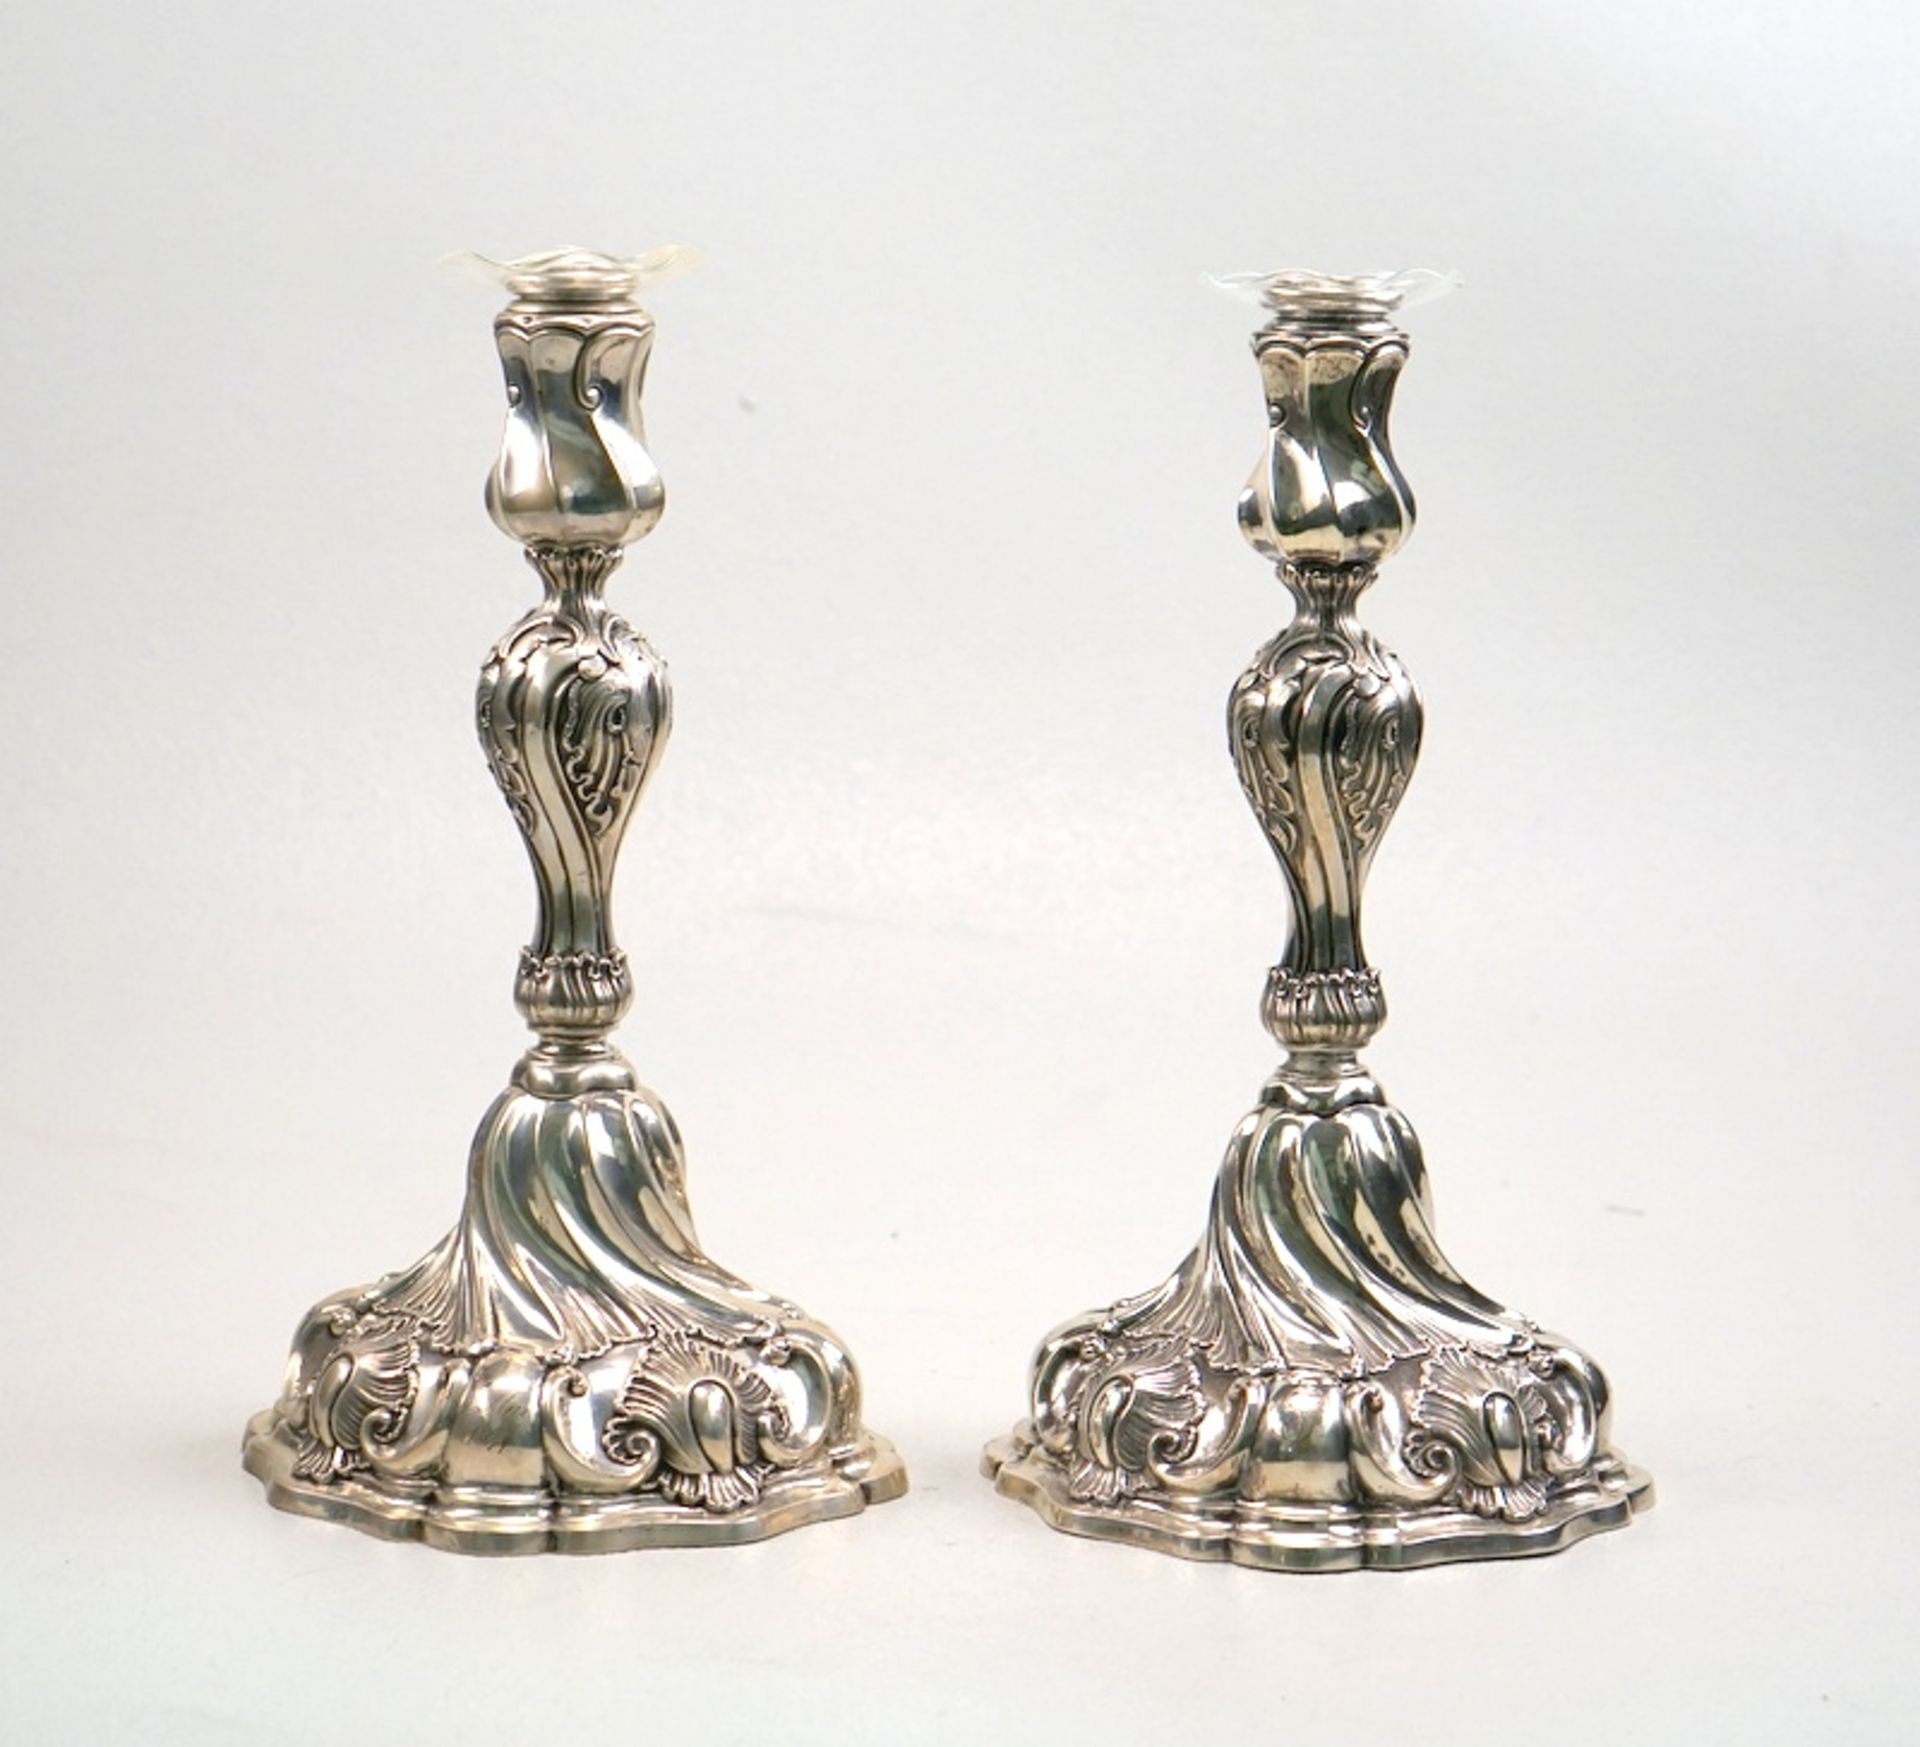 Paar große Kerzenhalter, 13 Lot Silber, Schenkungsgravur von 1877,Barock-Stil, Silber getrieben,